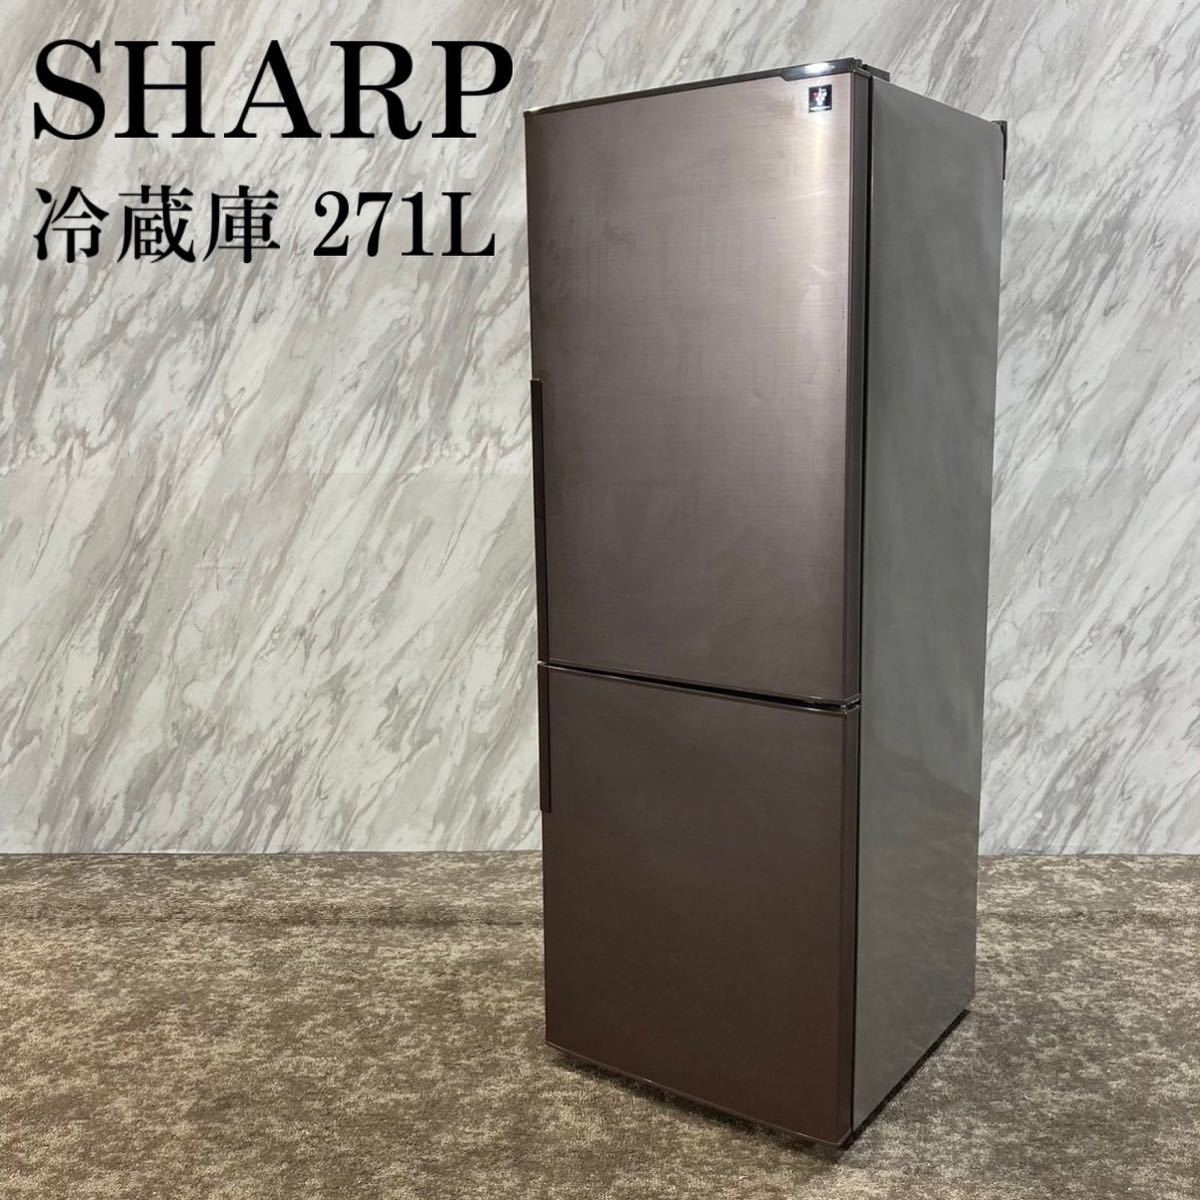 好きに SHARP J570 プラズマクラスター 271L SJ-PD27B-T 冷蔵庫 200